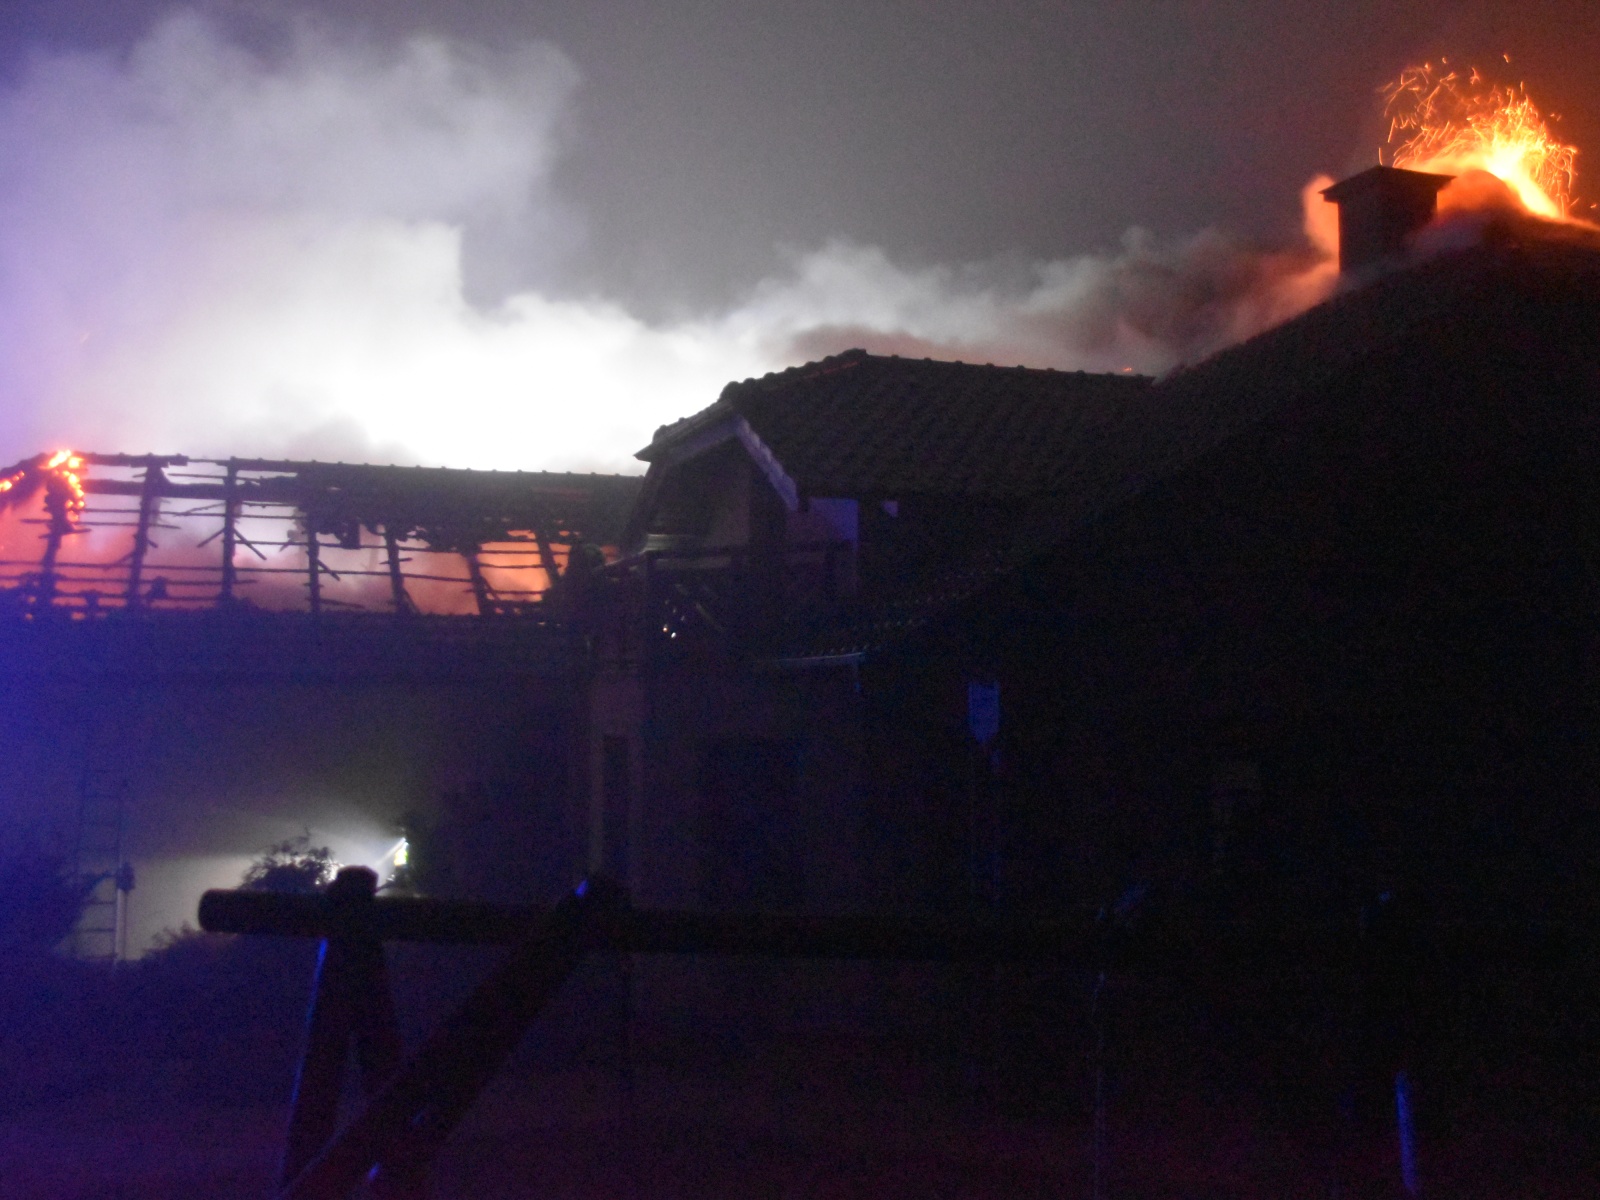 002 - požár střechy rodinného domu, plamenné hoření.JPG